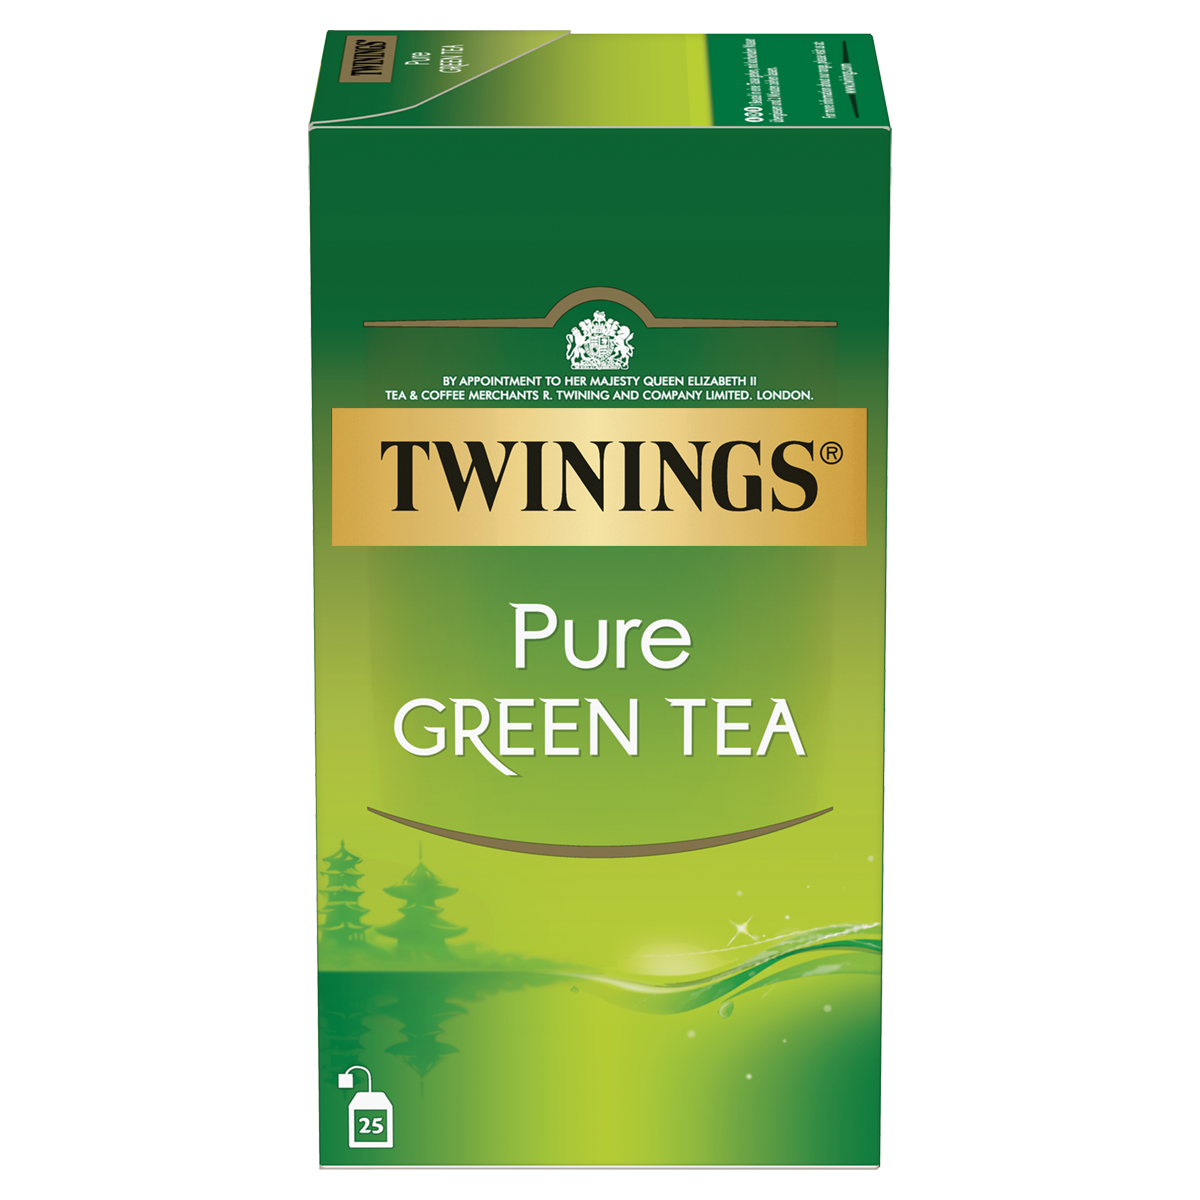  Pure Green Tea: le thé vert le plus pur